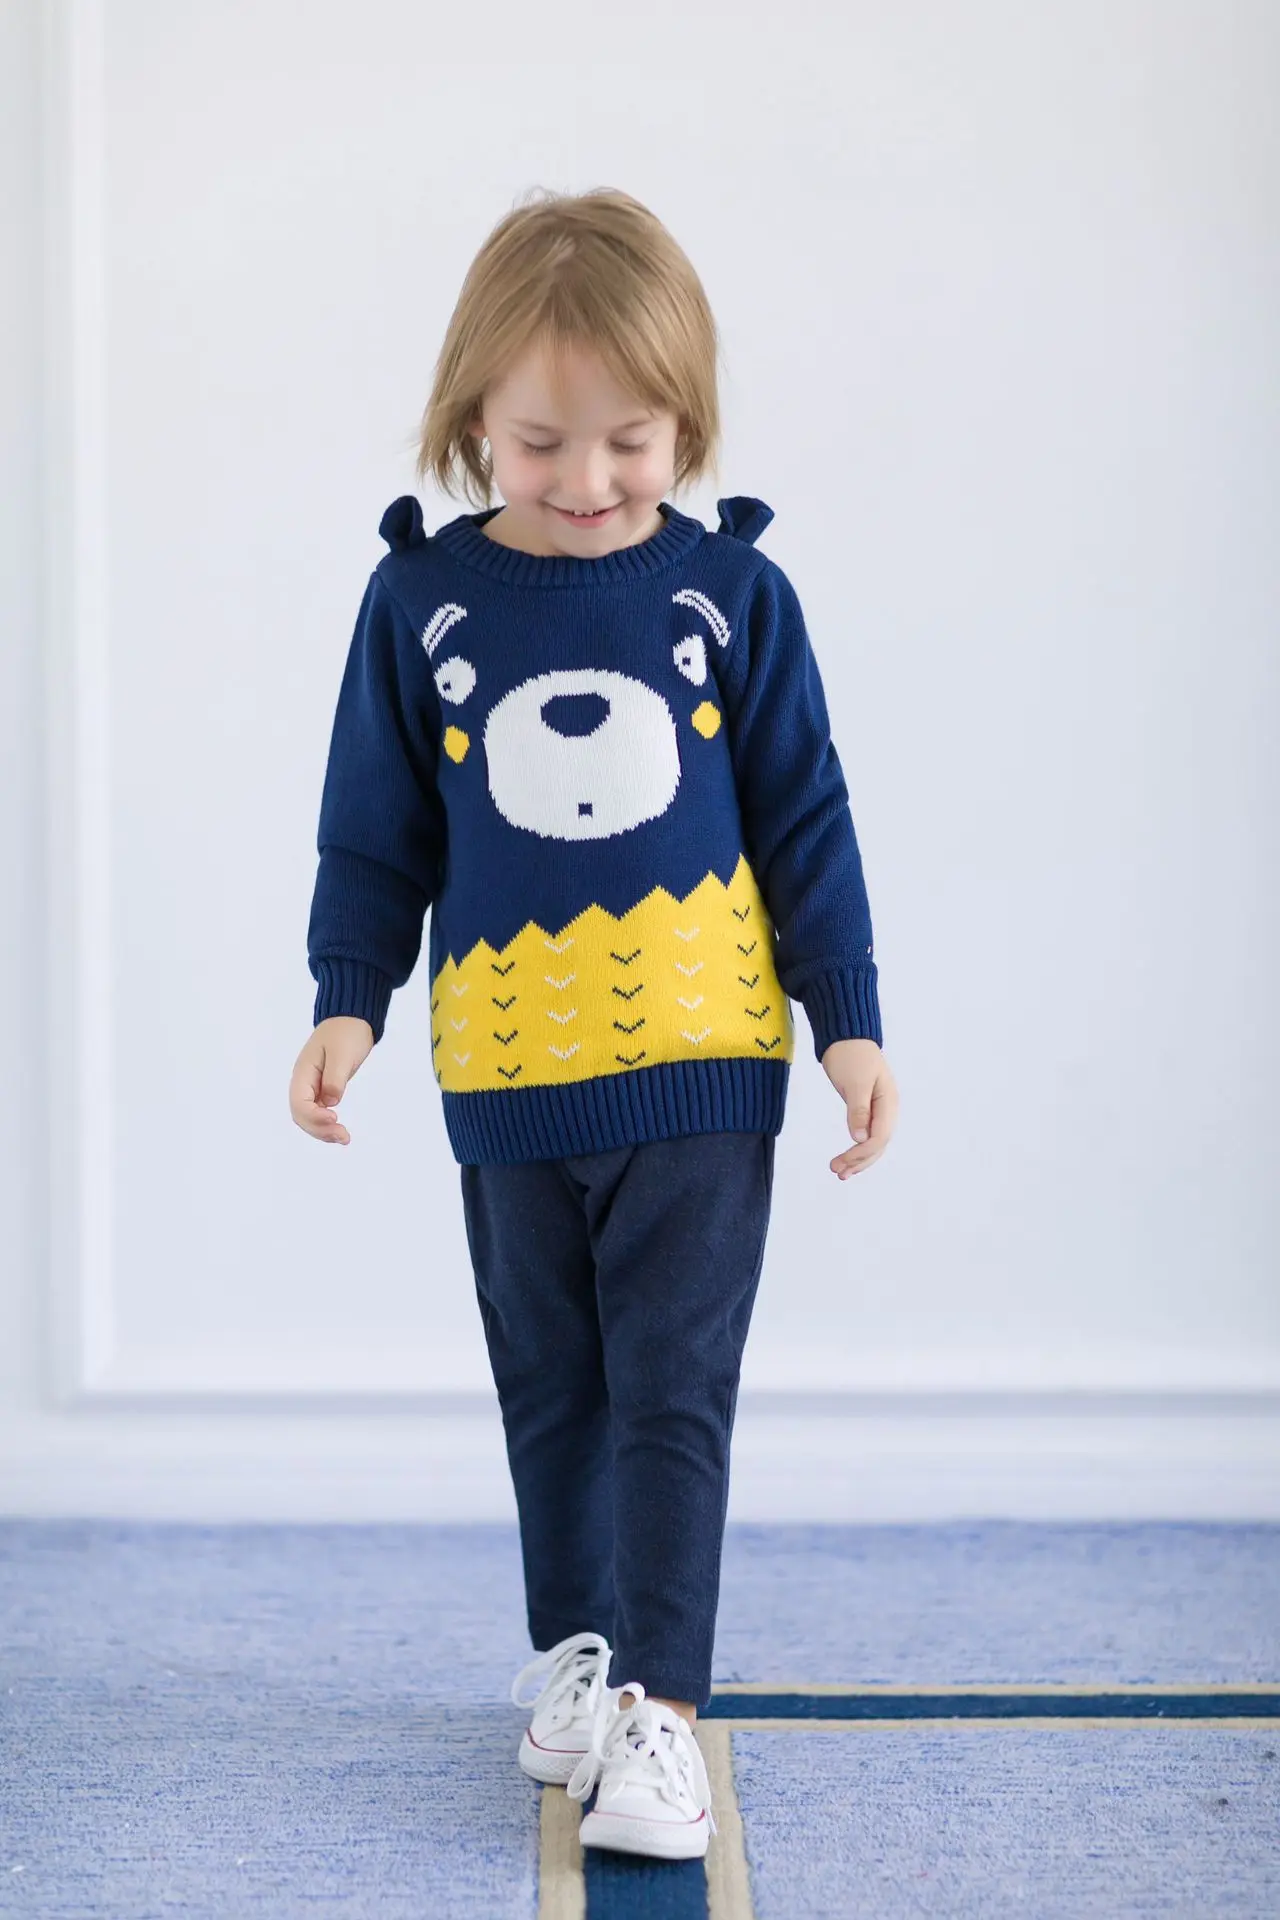 Новое поступление, зимние топы с милым рисунком медведя для маленьких мальчиков, Детский свитер пальто для малышей Топы для детей, вязаная верхняя одежда для детей от 1 до 6 лет